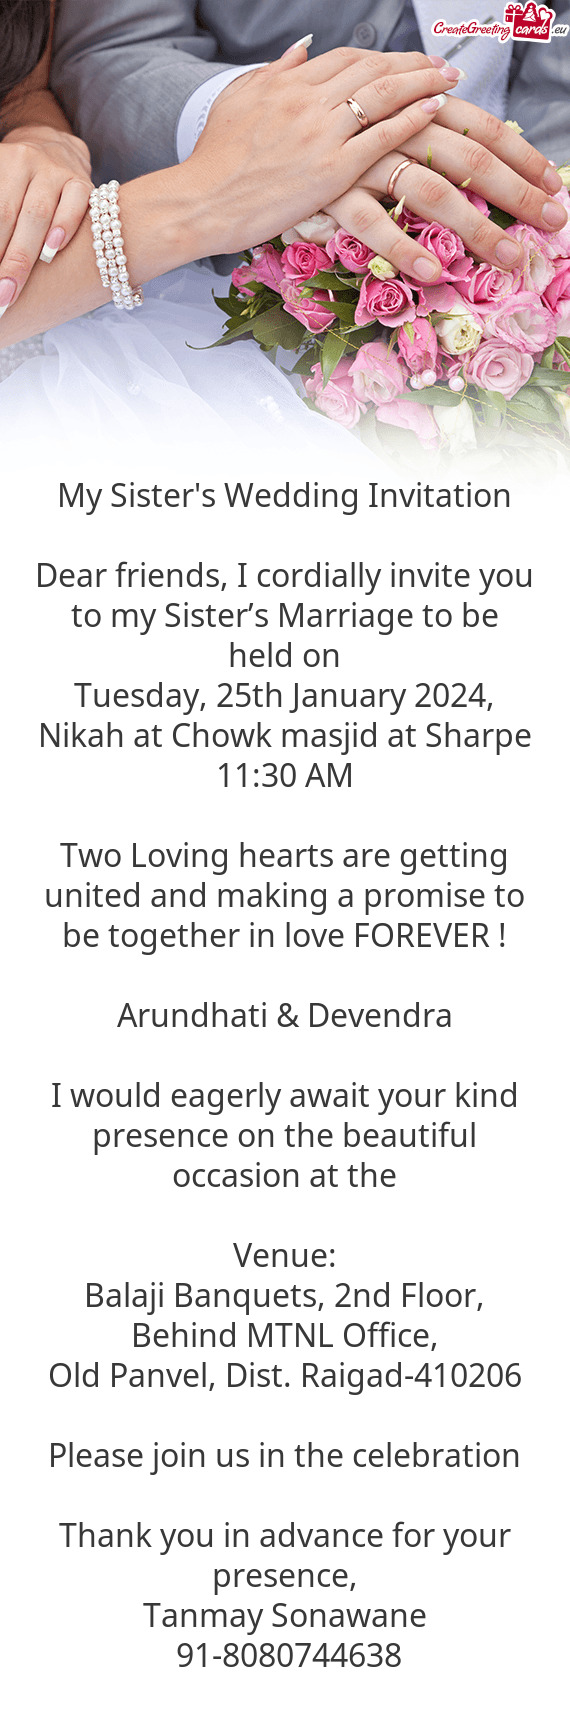 Arundhati & Devendra